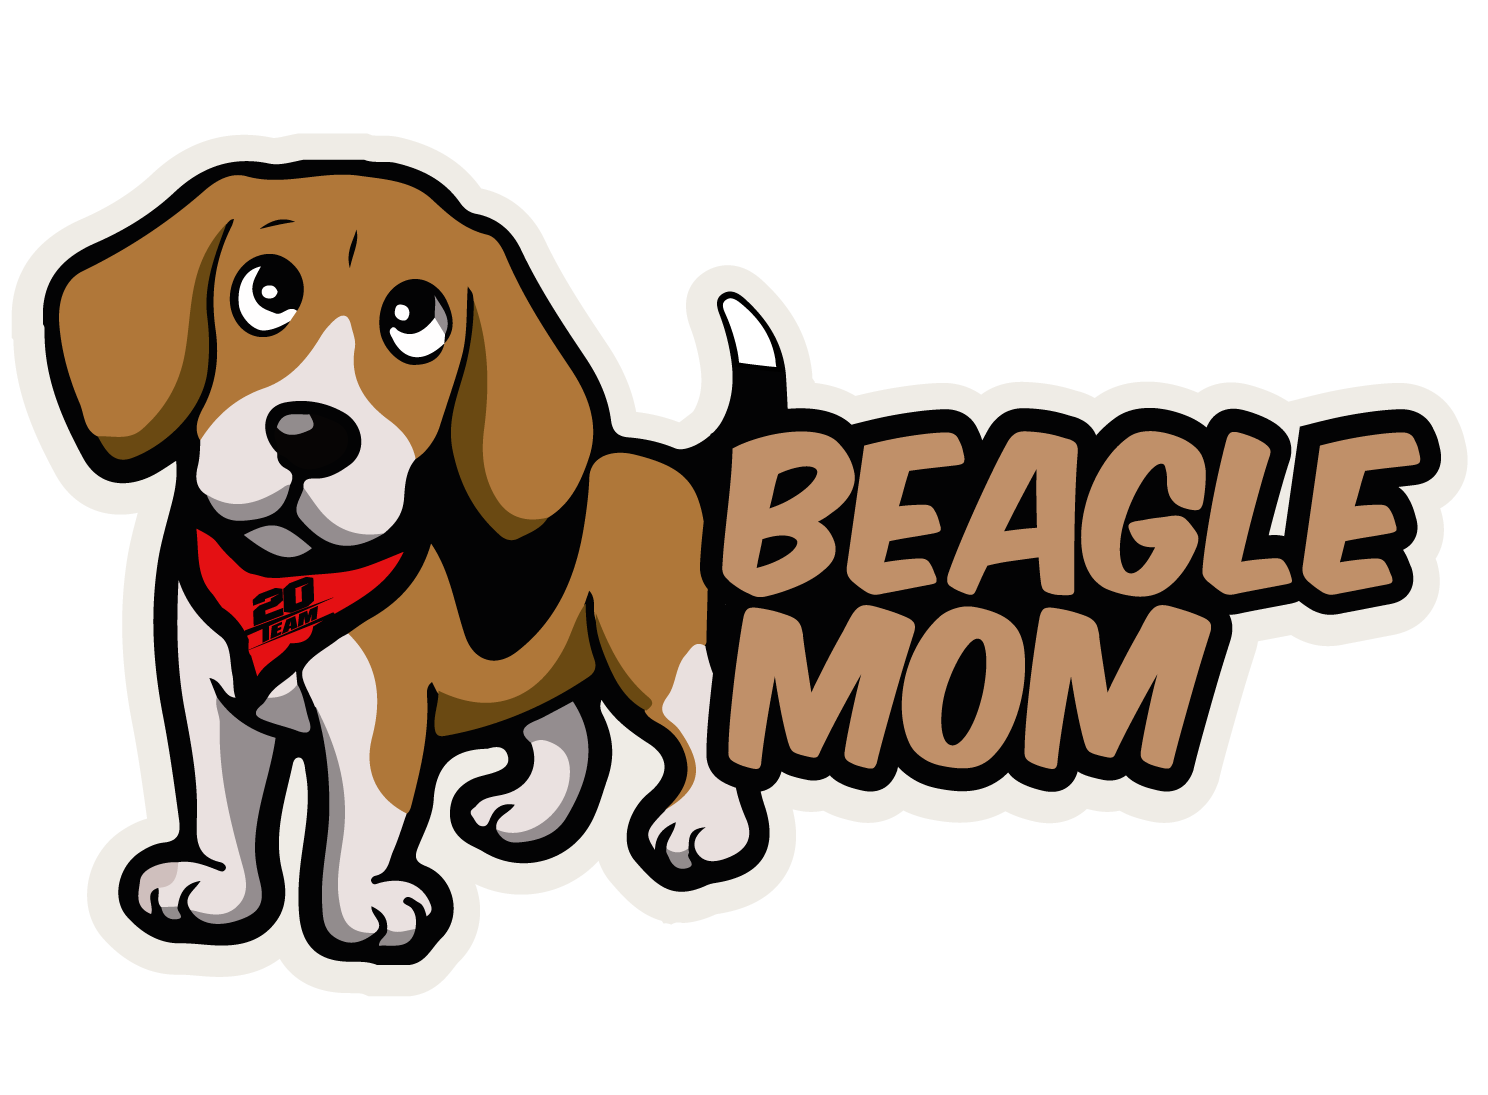 Billenlap "BEAGLE MOM"